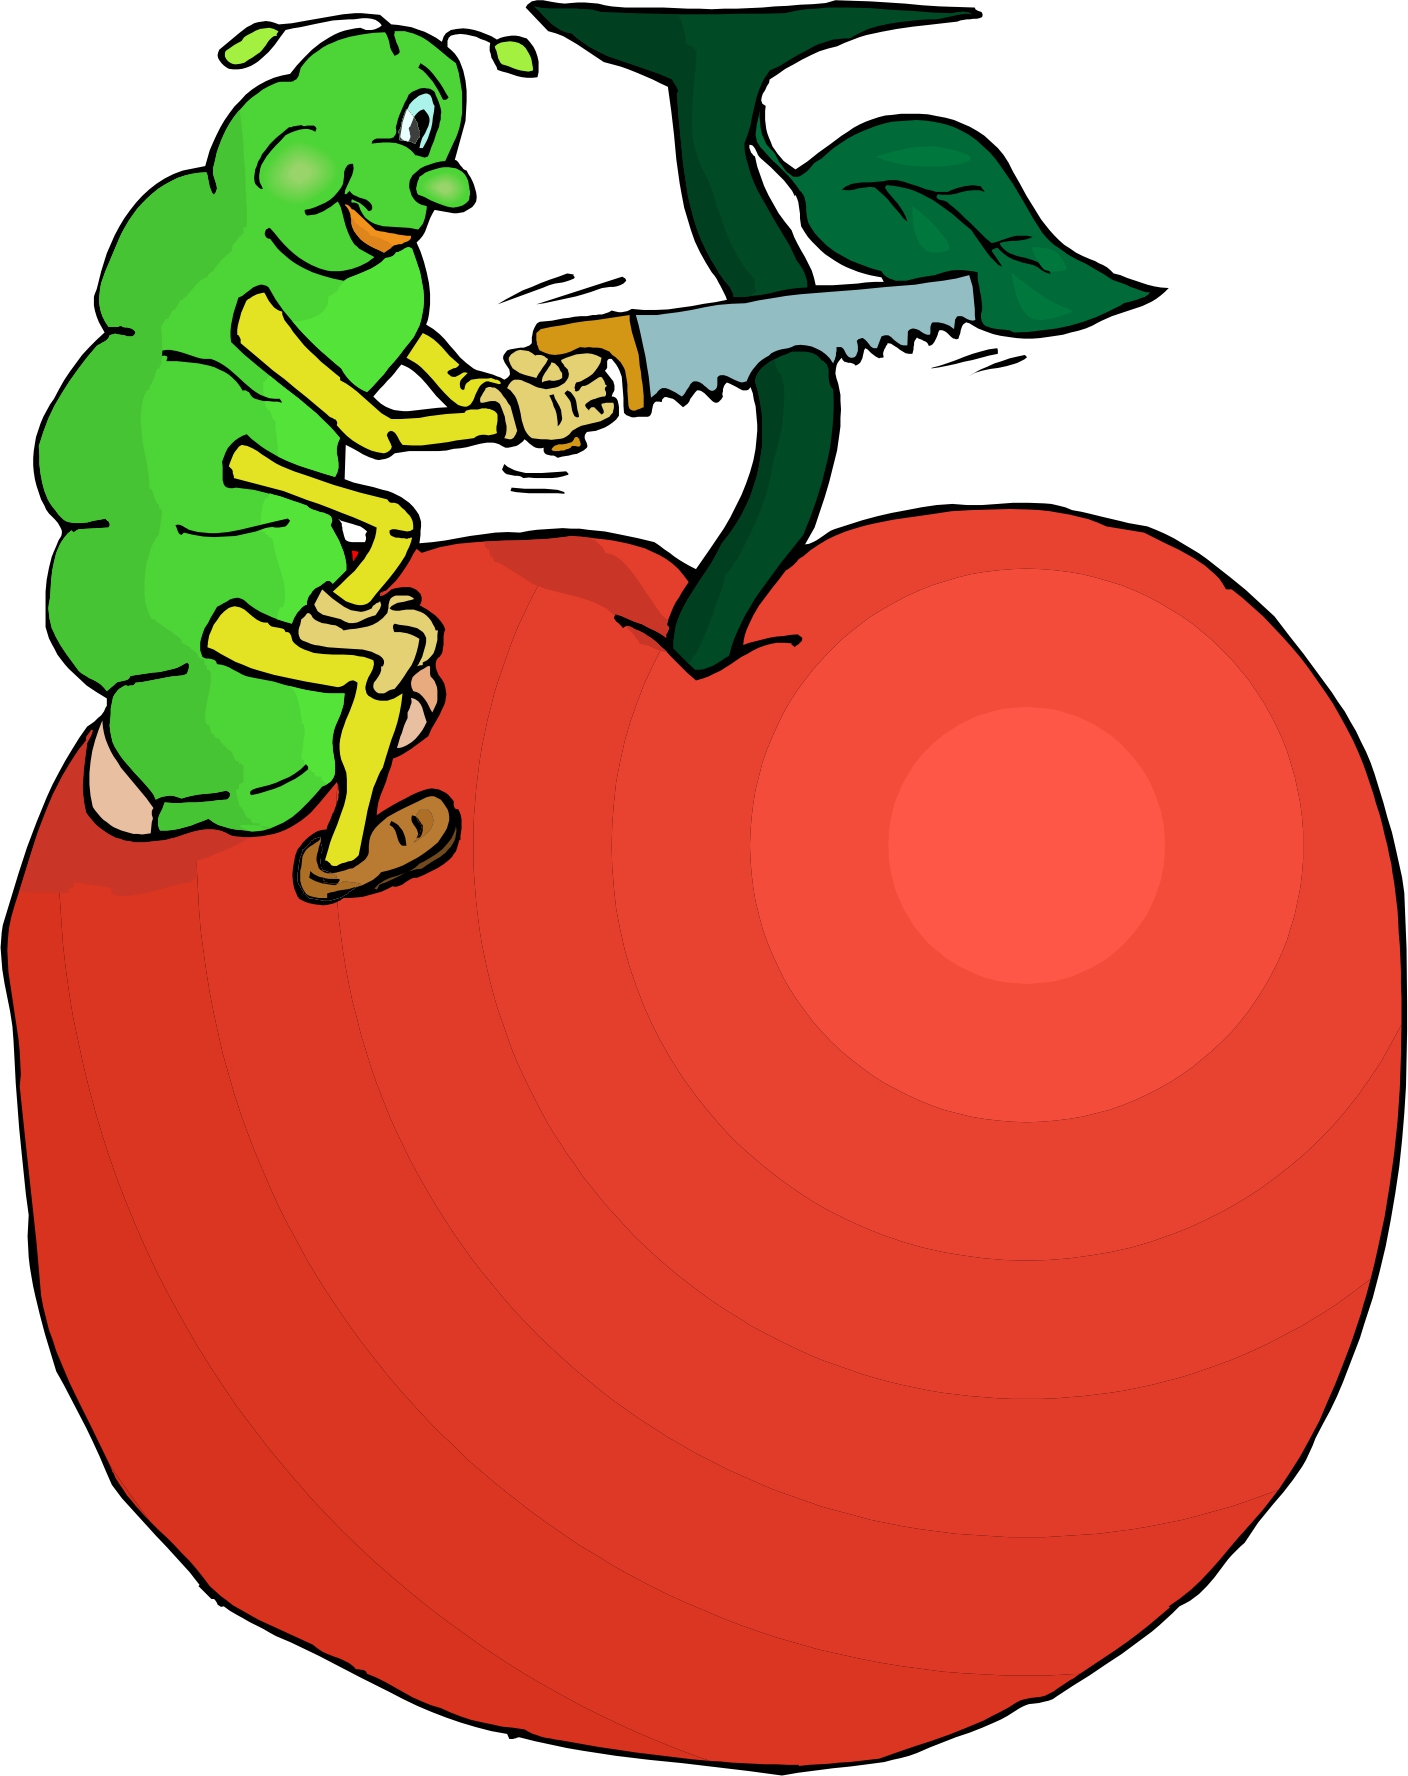 Червячок в огромном яблоке